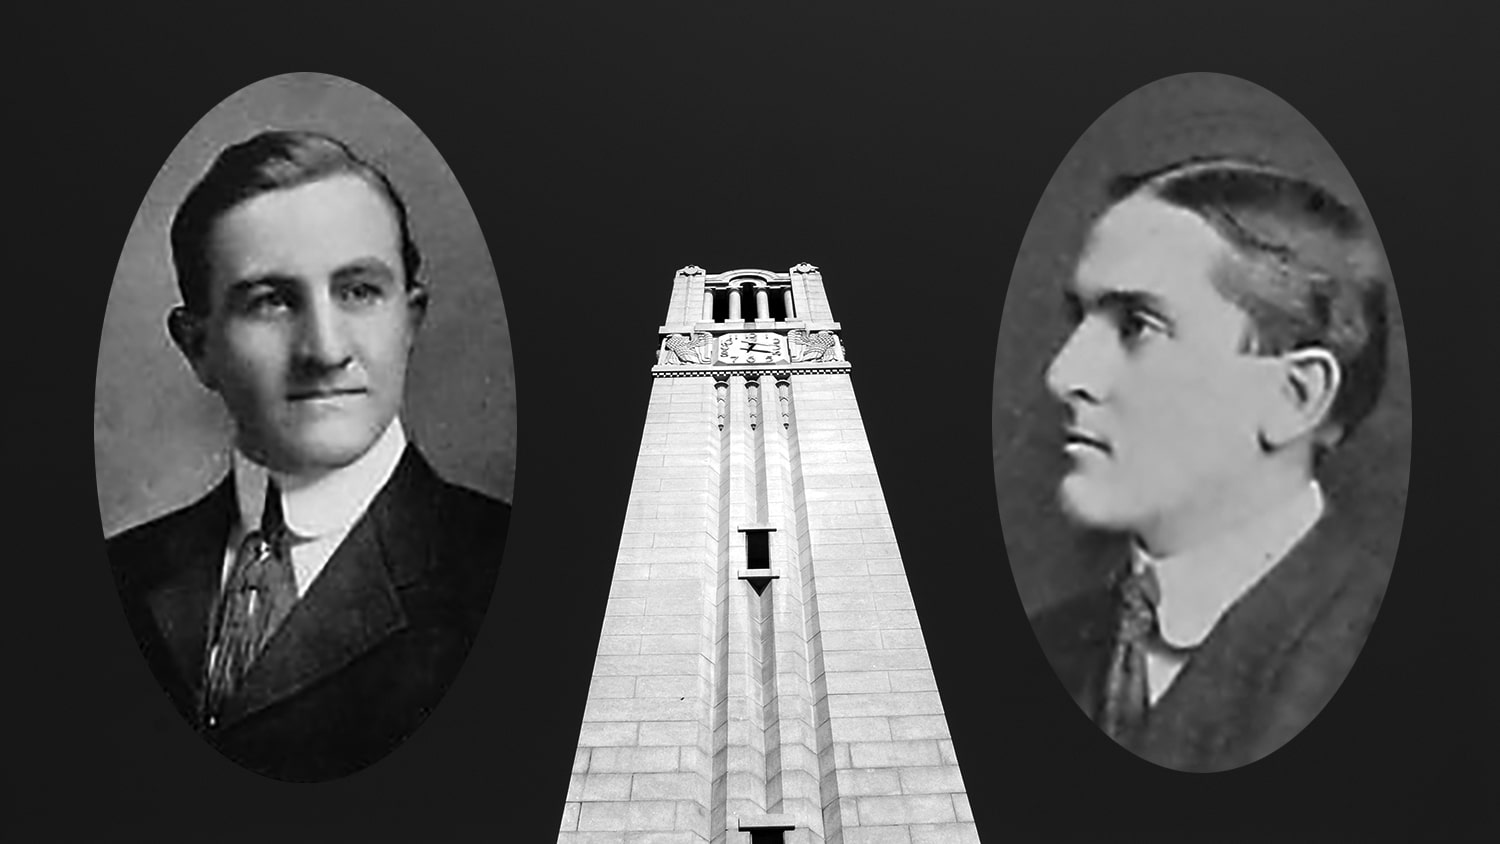 校友万斯·赛克斯和弗兰克·汤普森的档案照片与钟楼的图像形成对比。